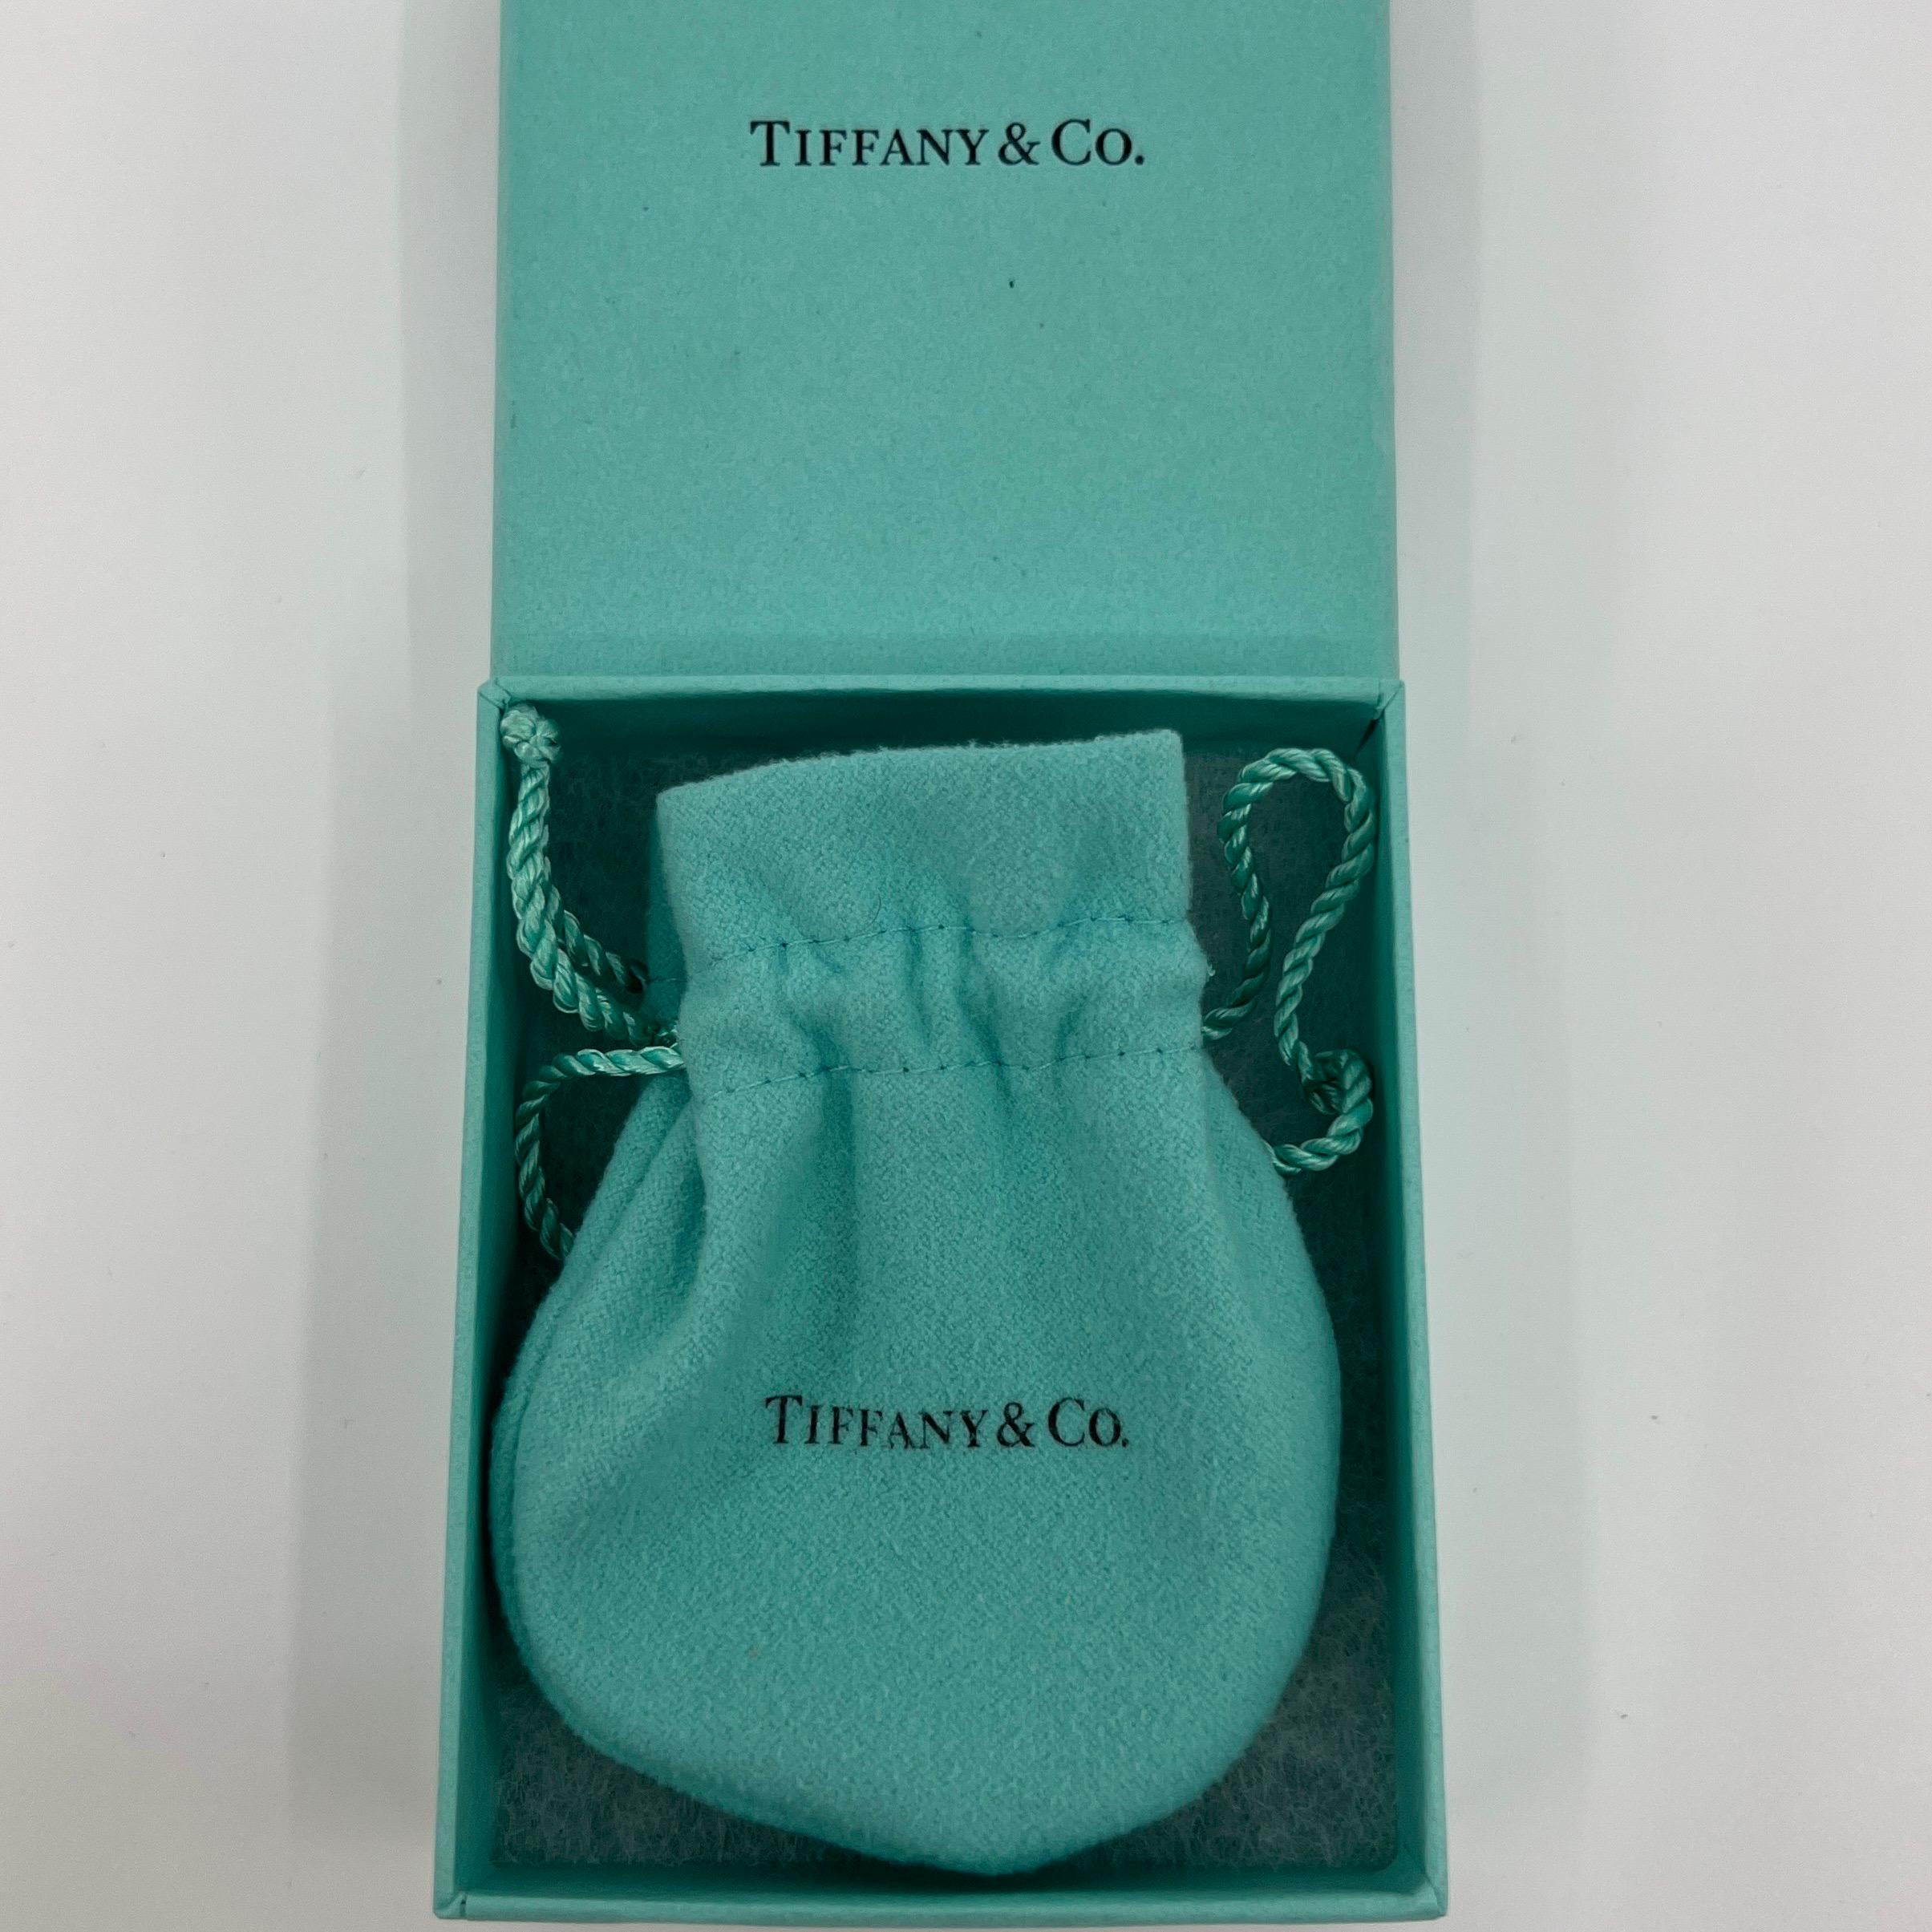 Tiffany & Co. Sparkler Yellow Citrine Lemon Quartz 18k Gold Pendant Necklace For Sale 4